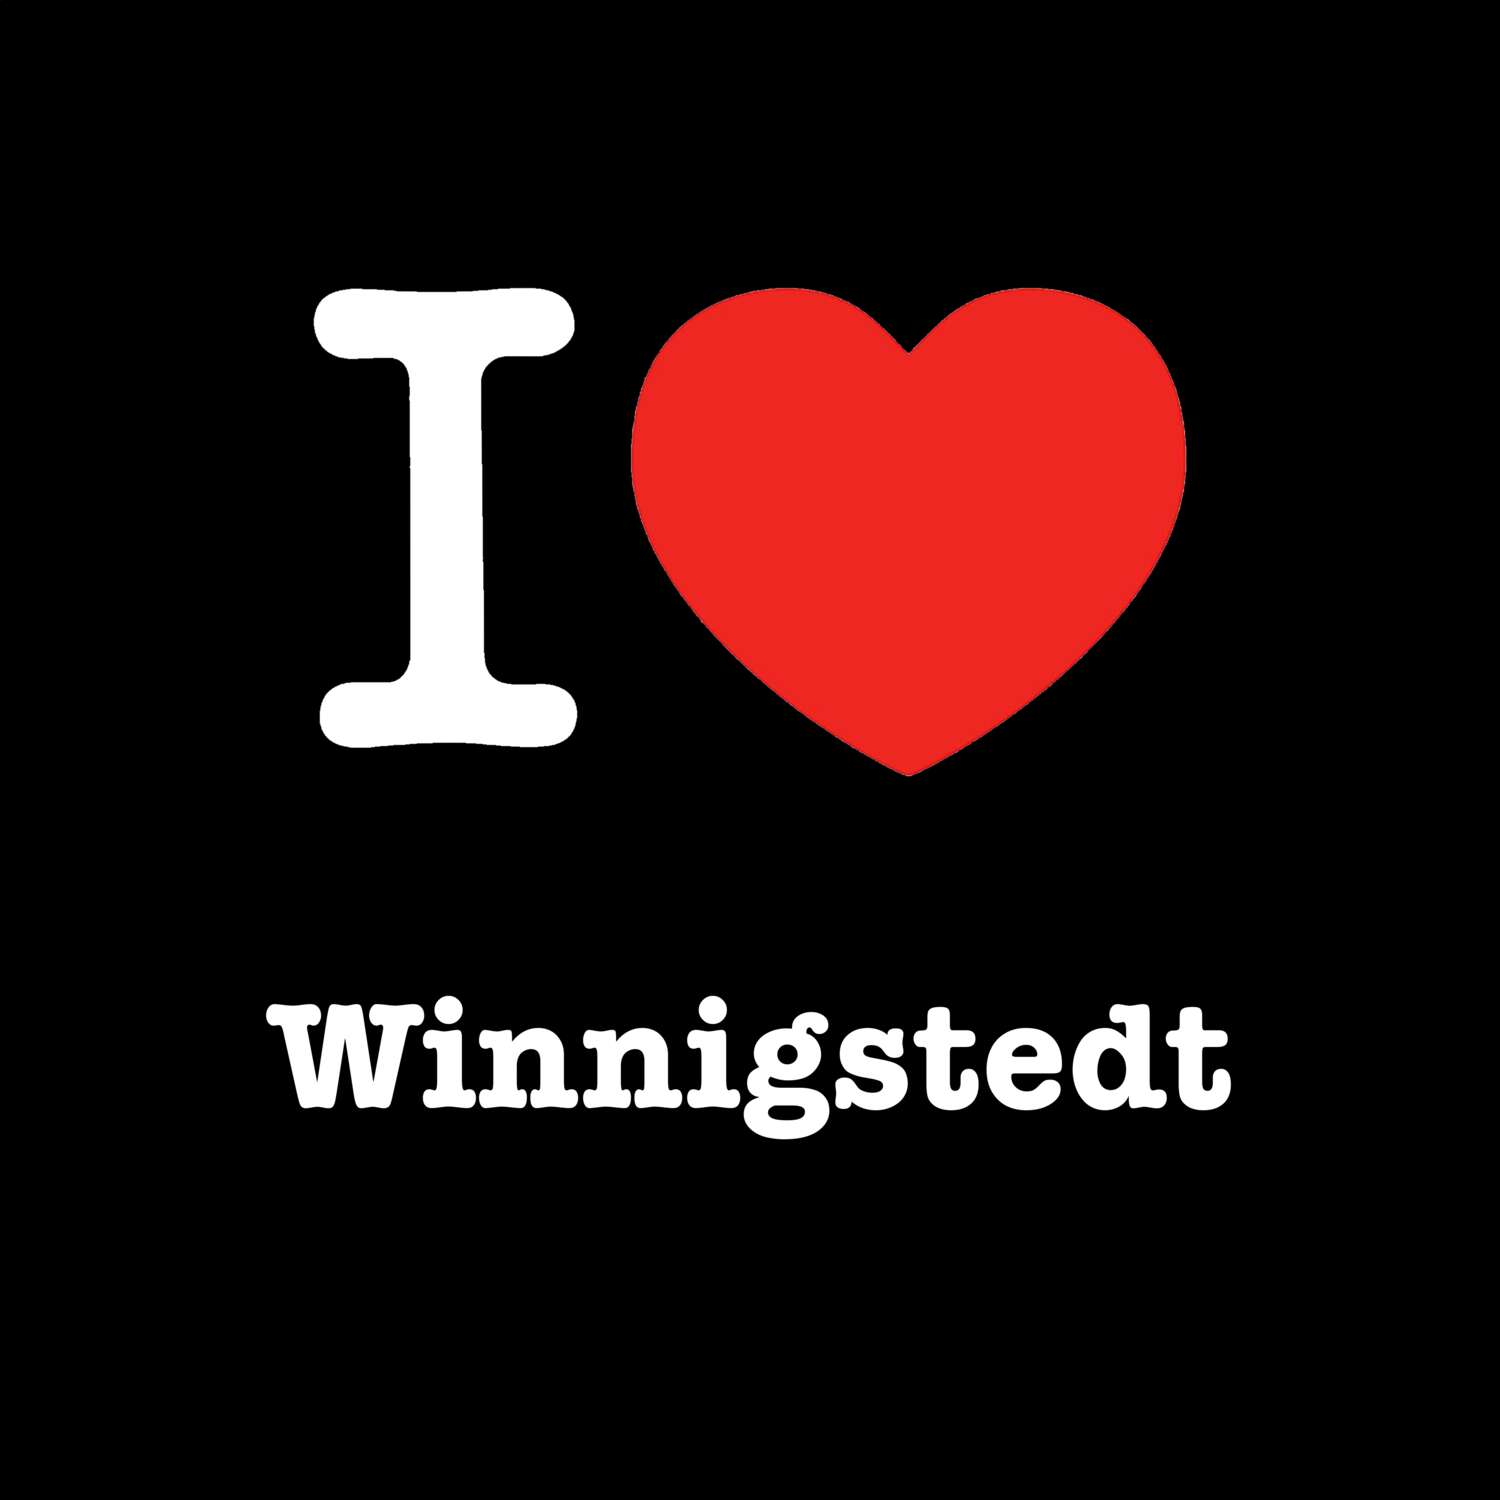 Winnigstedt T-Shirt »I love«